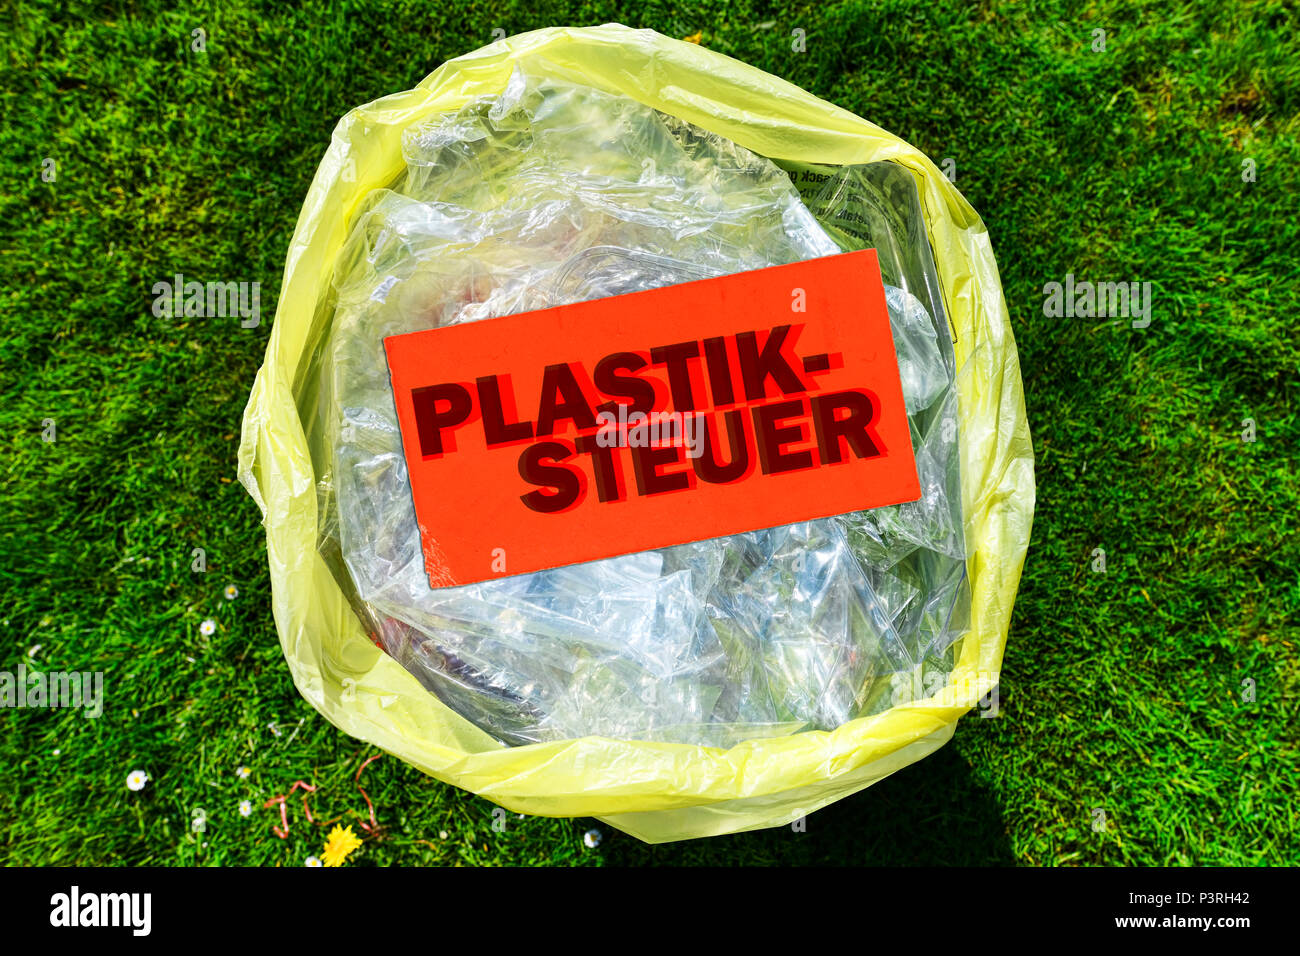 Rifiuti di imballaggi in plastica e prezzo di etichetta di plastica etichettati, controllo Verpackungsmüll aus Kunststoff und Preisschild mit der Aufschrift Plastiksteuer Foto Stock